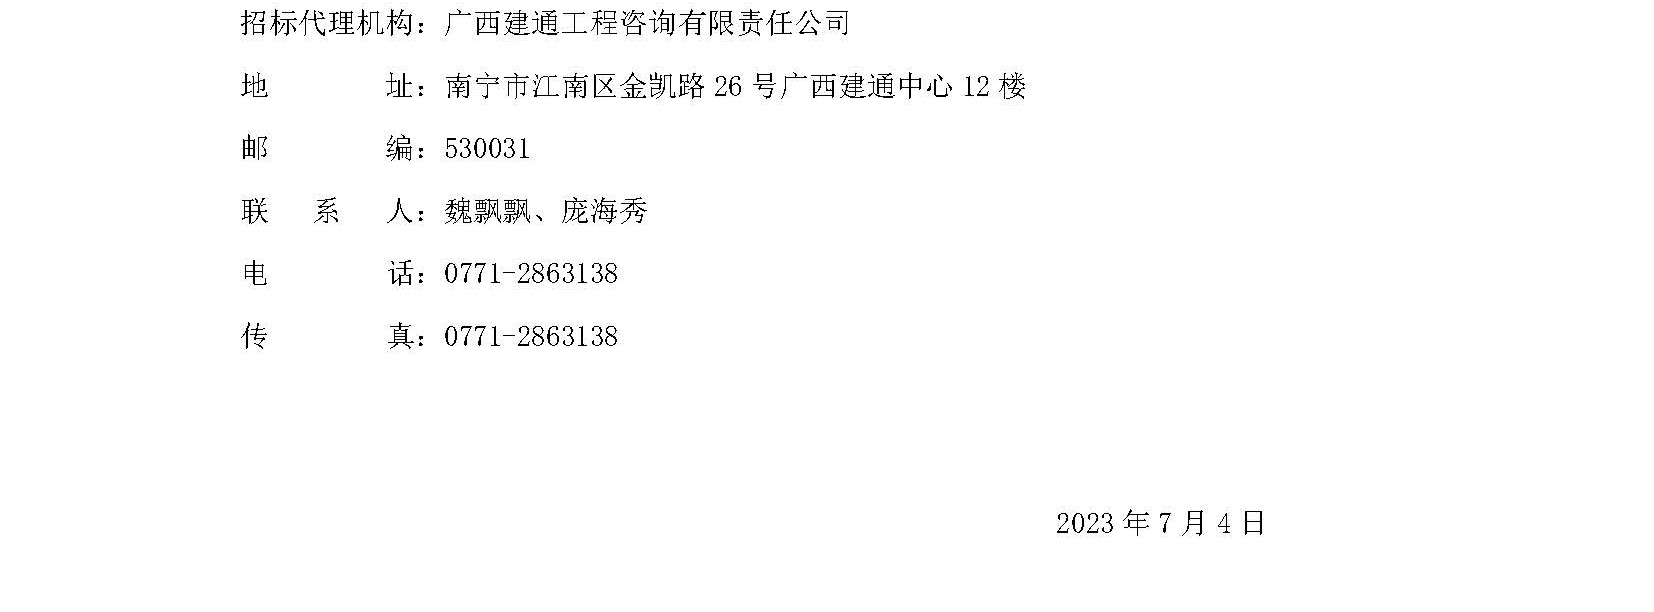 广西中烟工业有限责任公司2023-2025年合作品牌条、盒包装纸采购之南京（红）变更公告（一）_页面_2.jpg